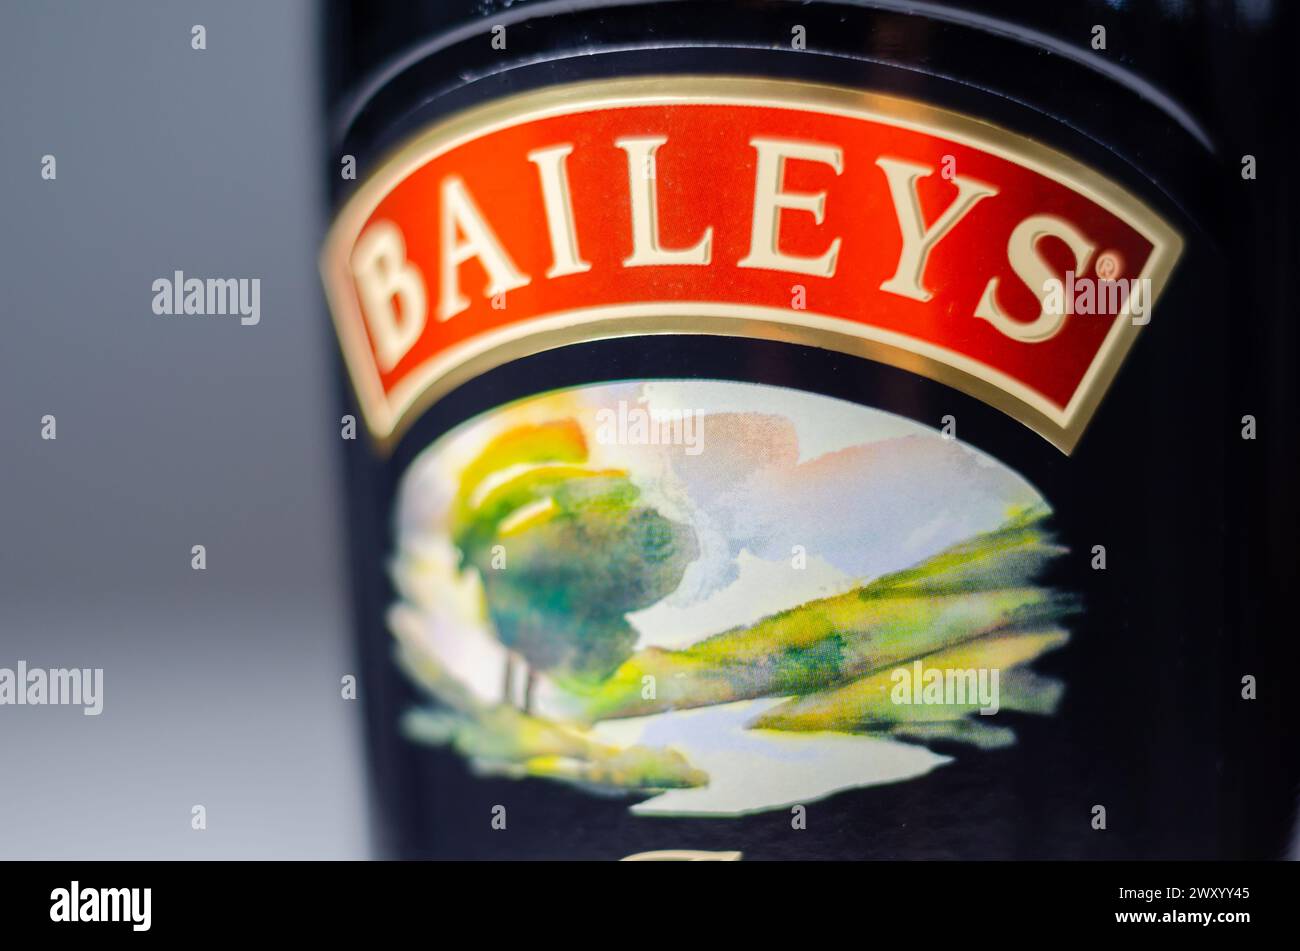 LONDRES, Royaume-Uni - 22 MARS 2024 Baileys original Irish Cream liqueur, la liqueur à la crème irlandaise originale qui offre une délicieuse combinaison de crémeux, Banque D'Images